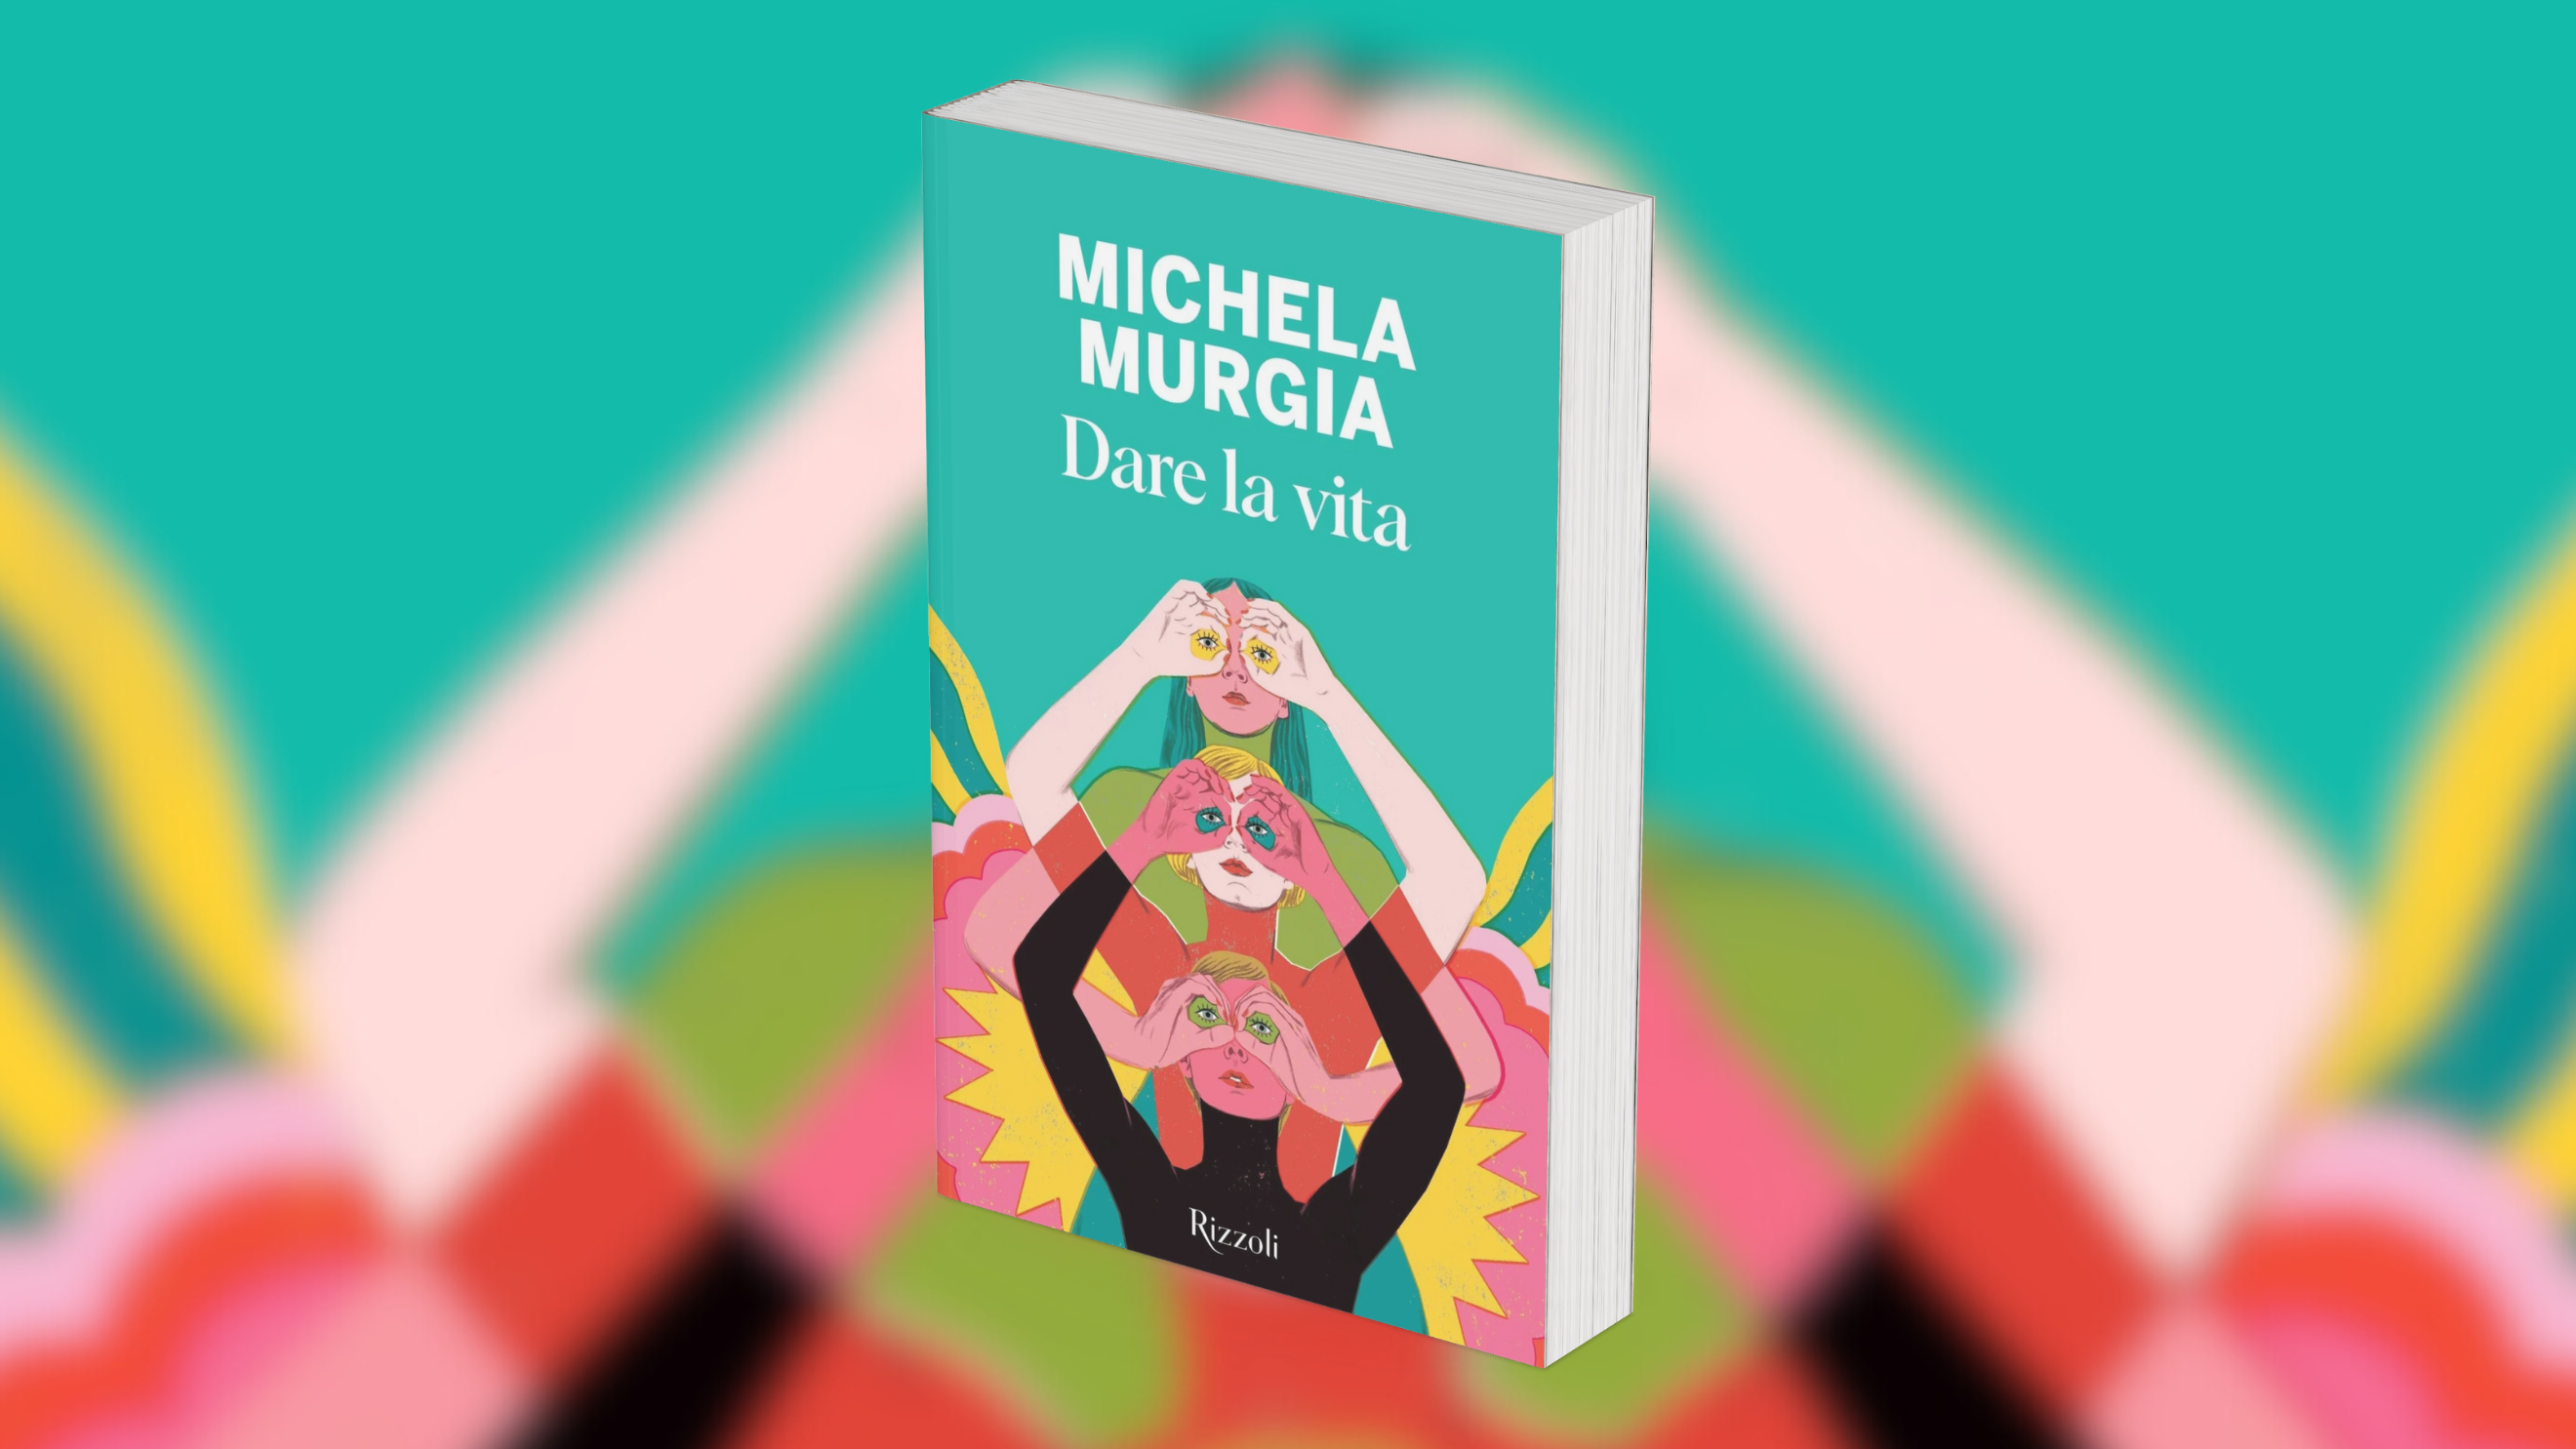 Dare la vita” di Michela Murgia è l'eredità da cui ripartire